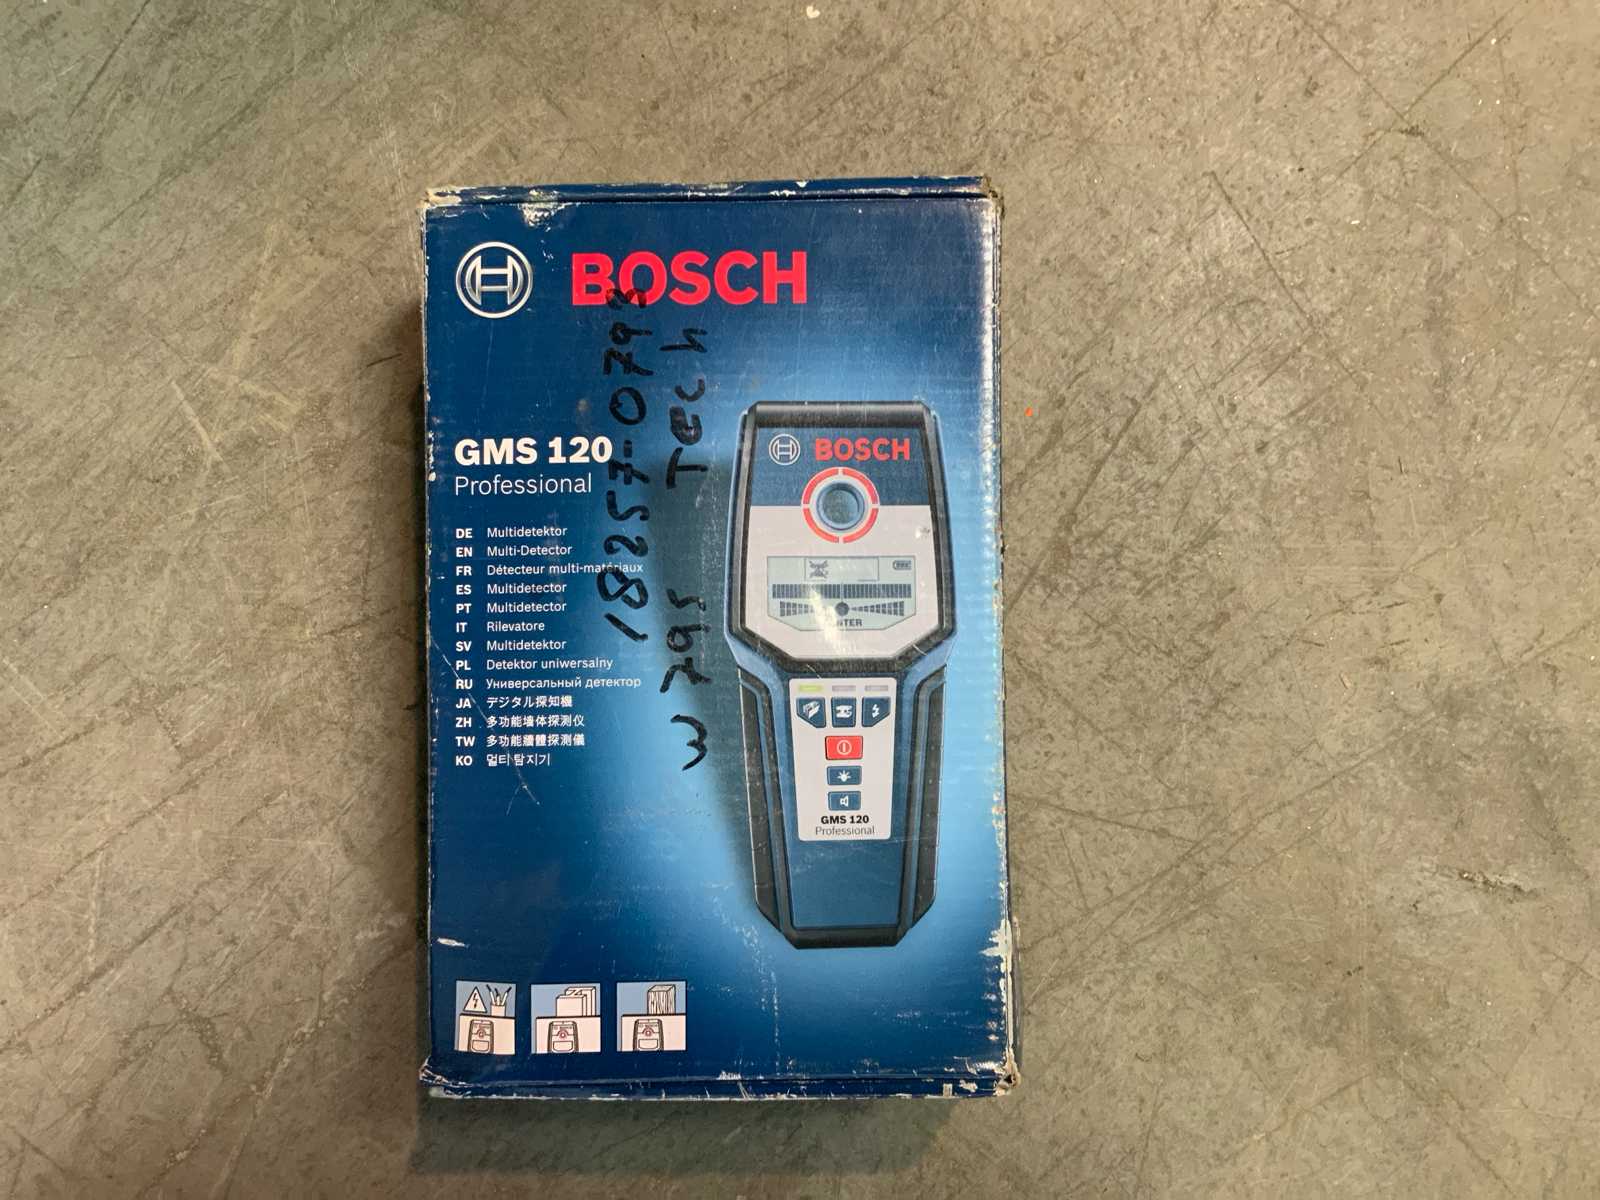 GMS 120 Détecteur  Bosch Professional